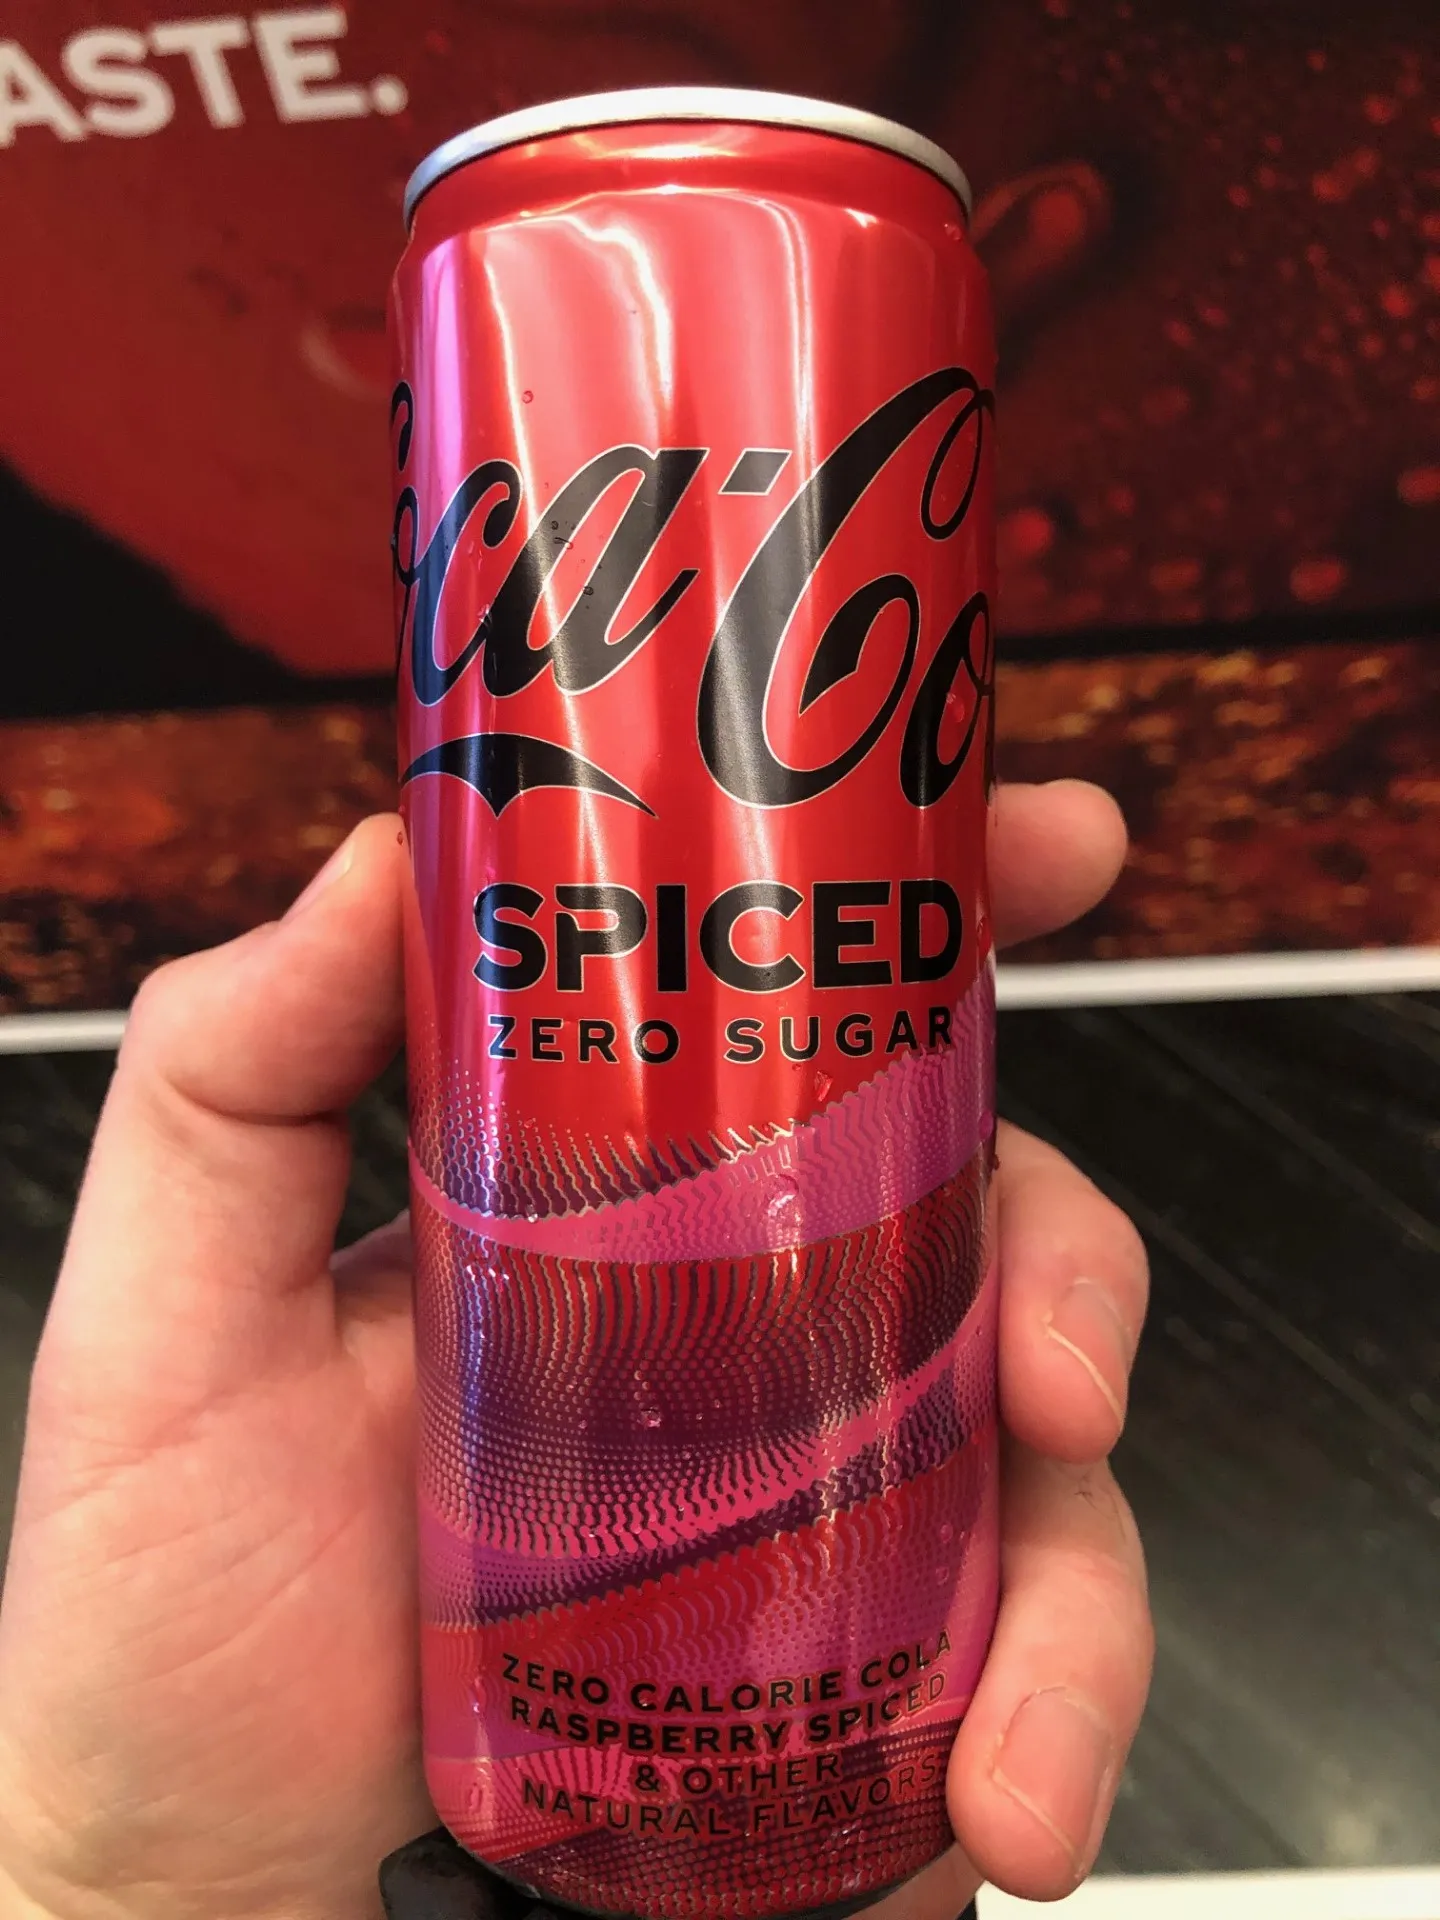 تعد نكهة Spiced الجديدة من Coke أول إضافة جديدة دائمة لمحفظة العلامة التجارية منذ ثلاث سنوات.